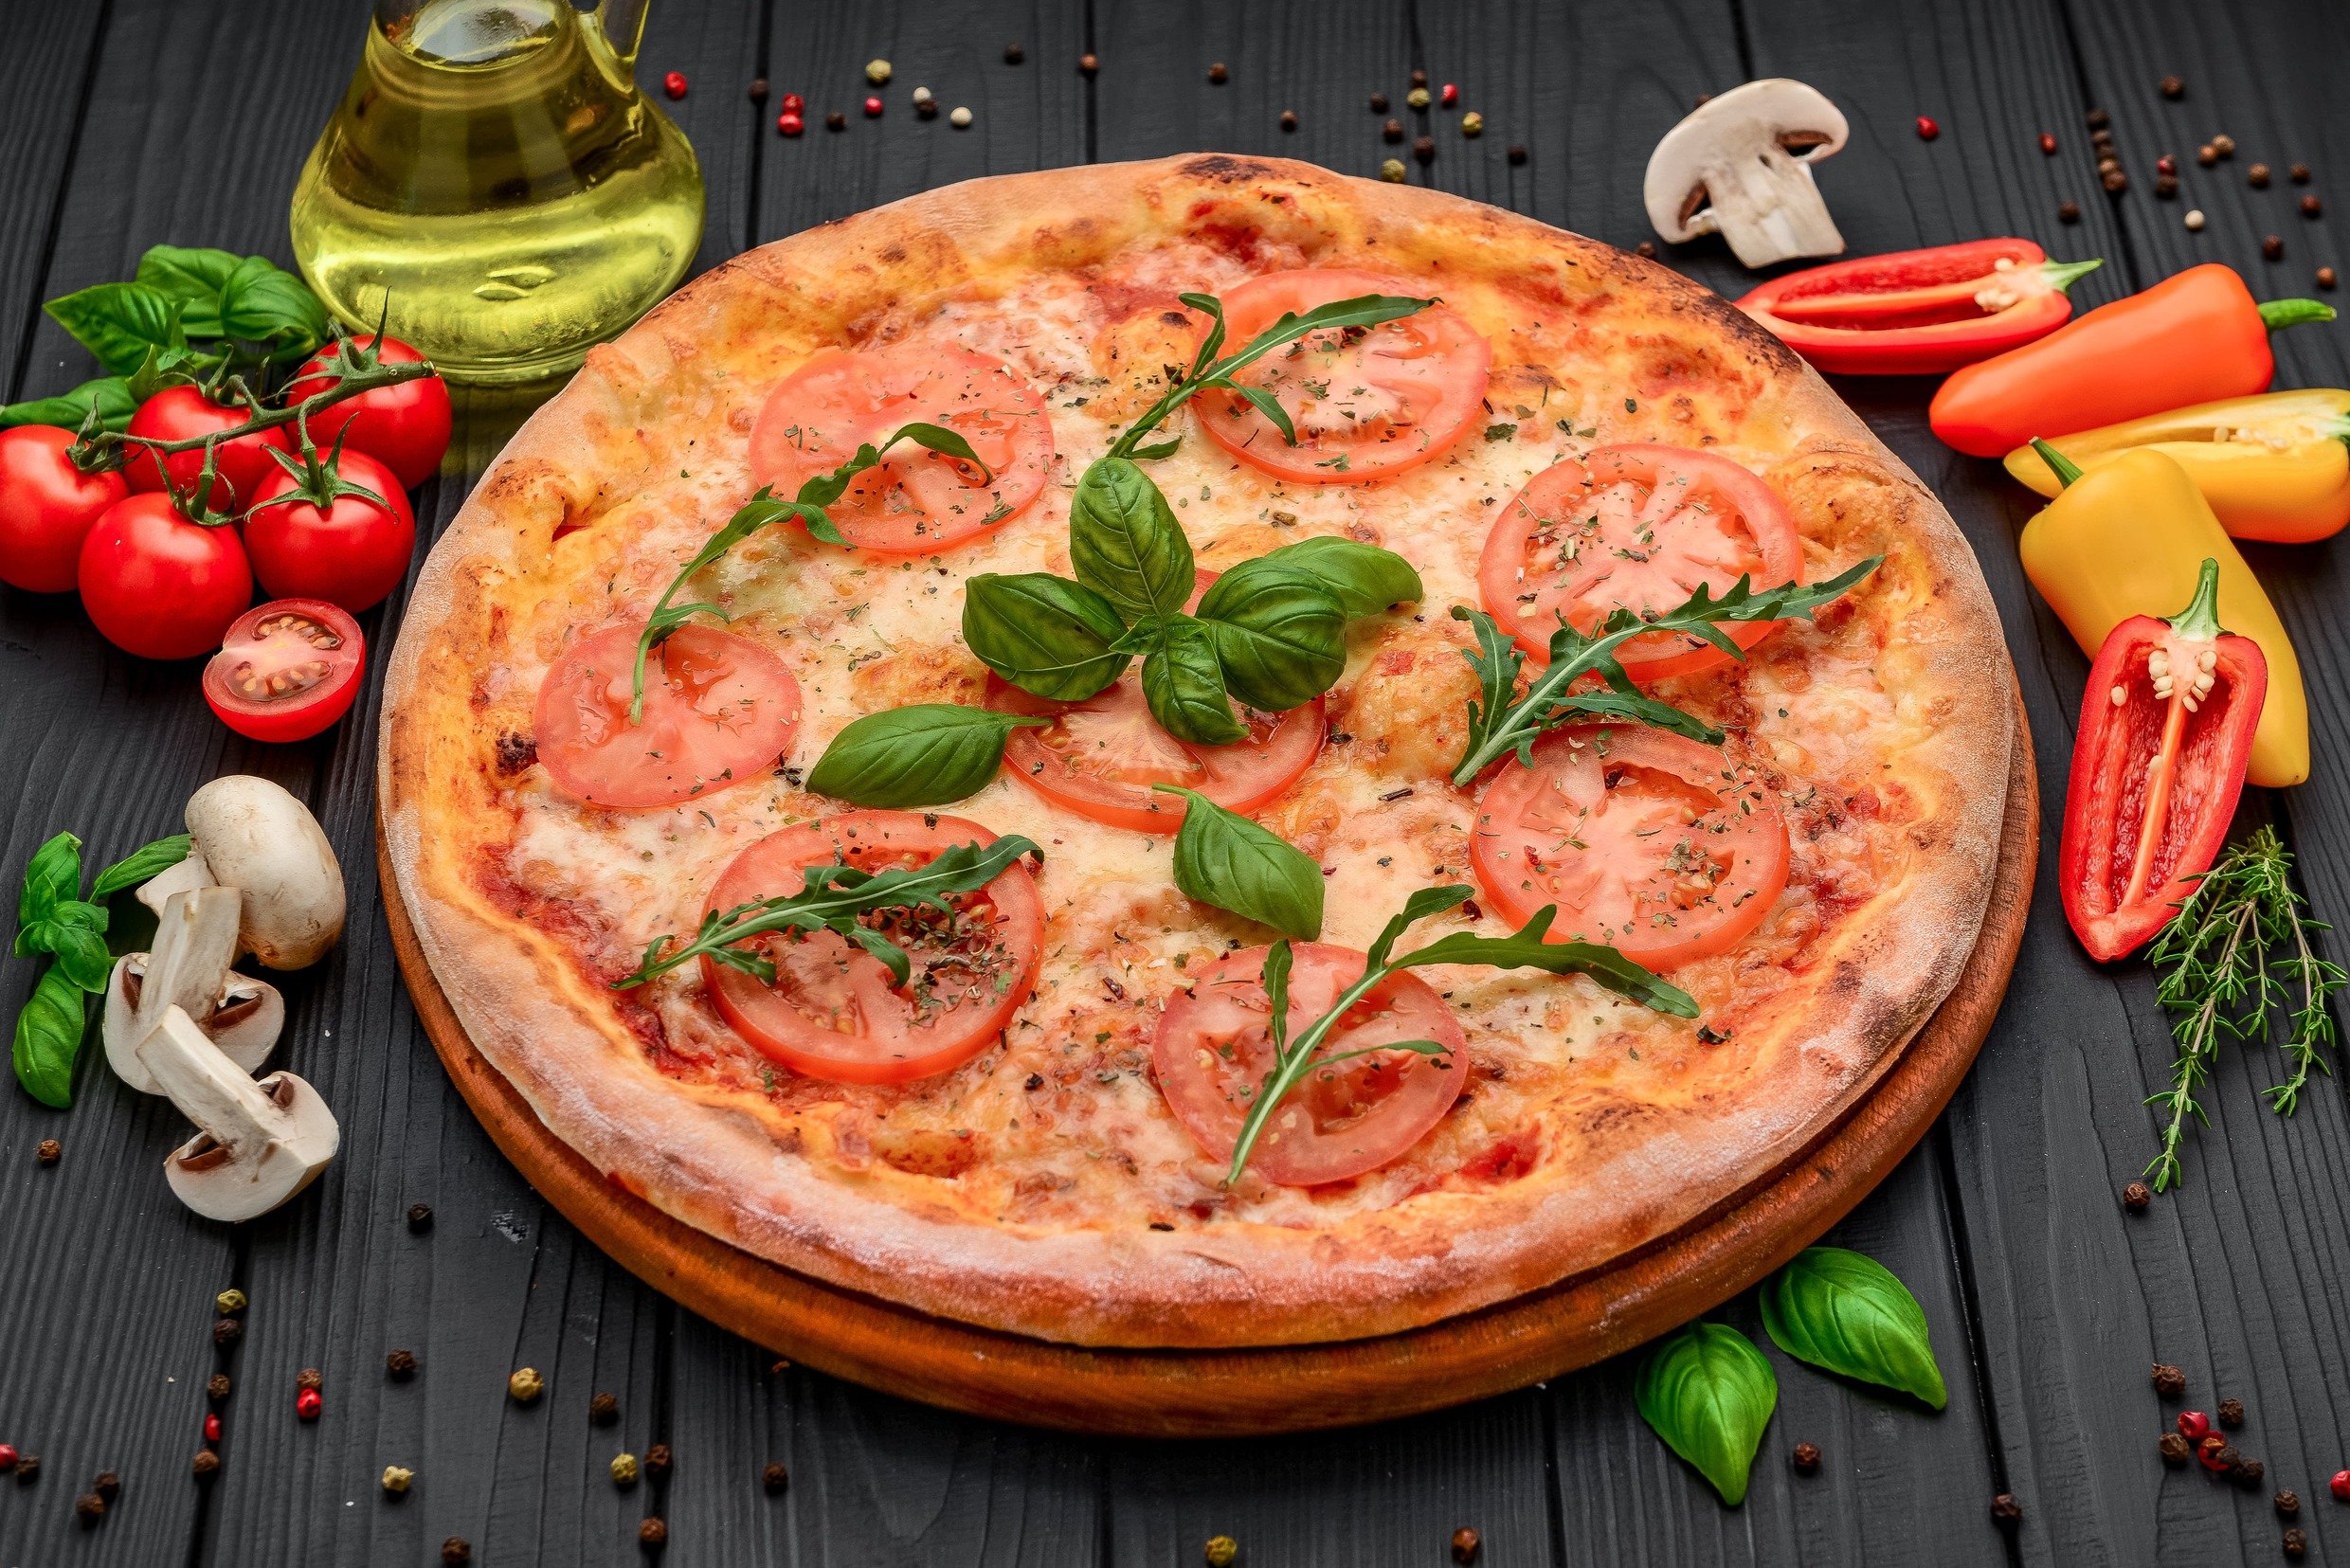 тесто и начинка для итальянской пиццы фото 80